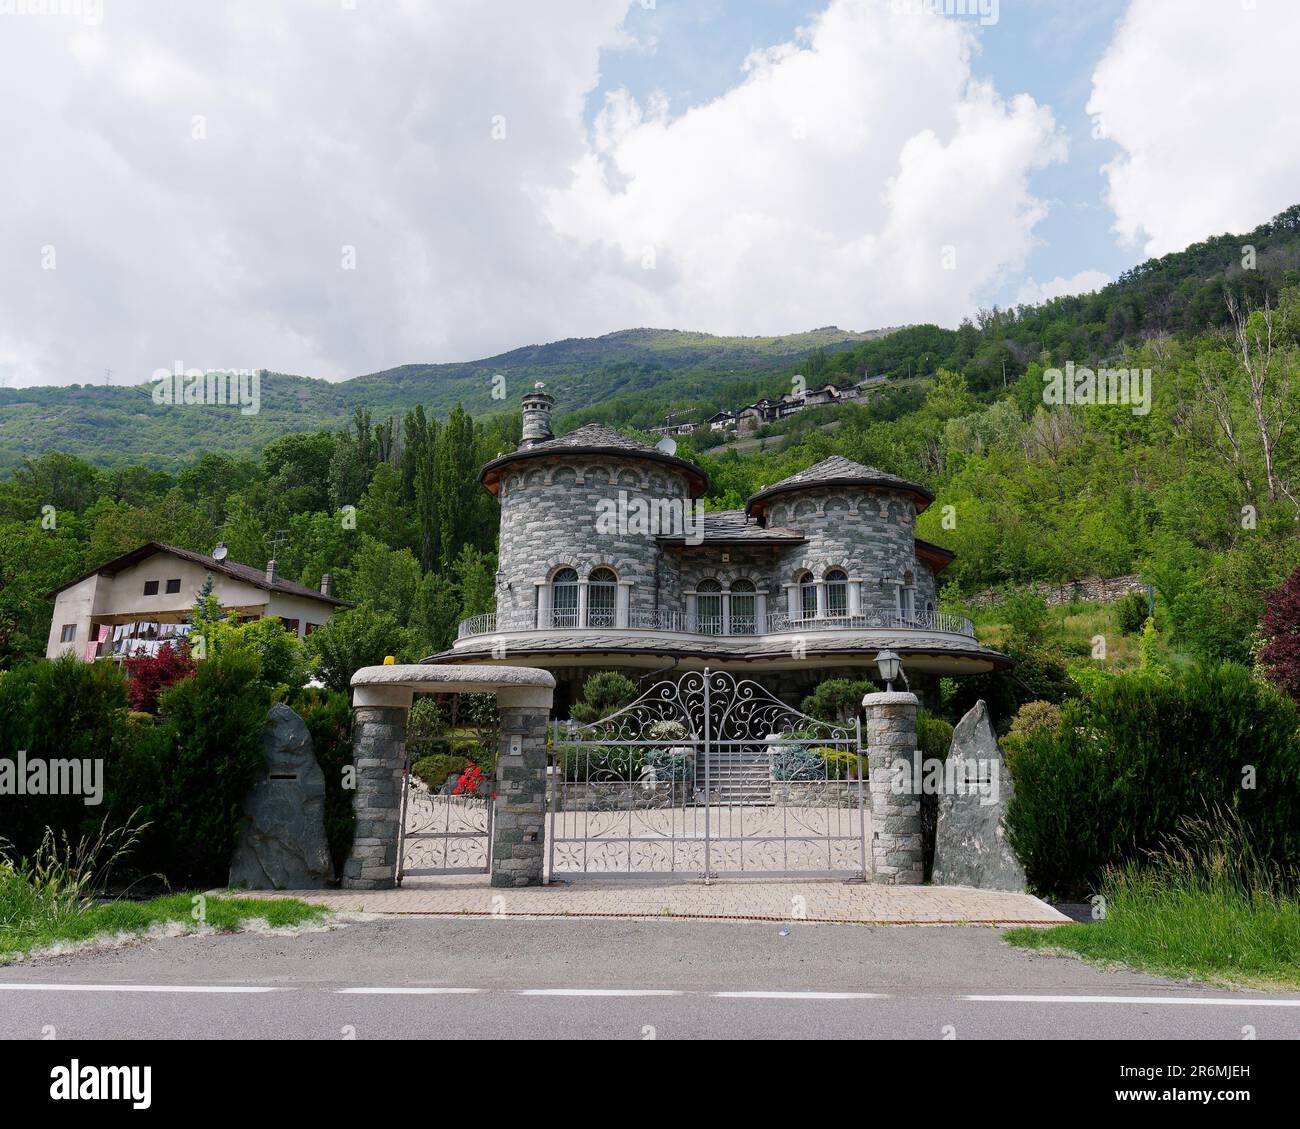 Sehr markantes Steinhaus im Burgstil mit zwei Türmen, in der Nähe von NUS, Aosta Valley, Italien Stockfoto